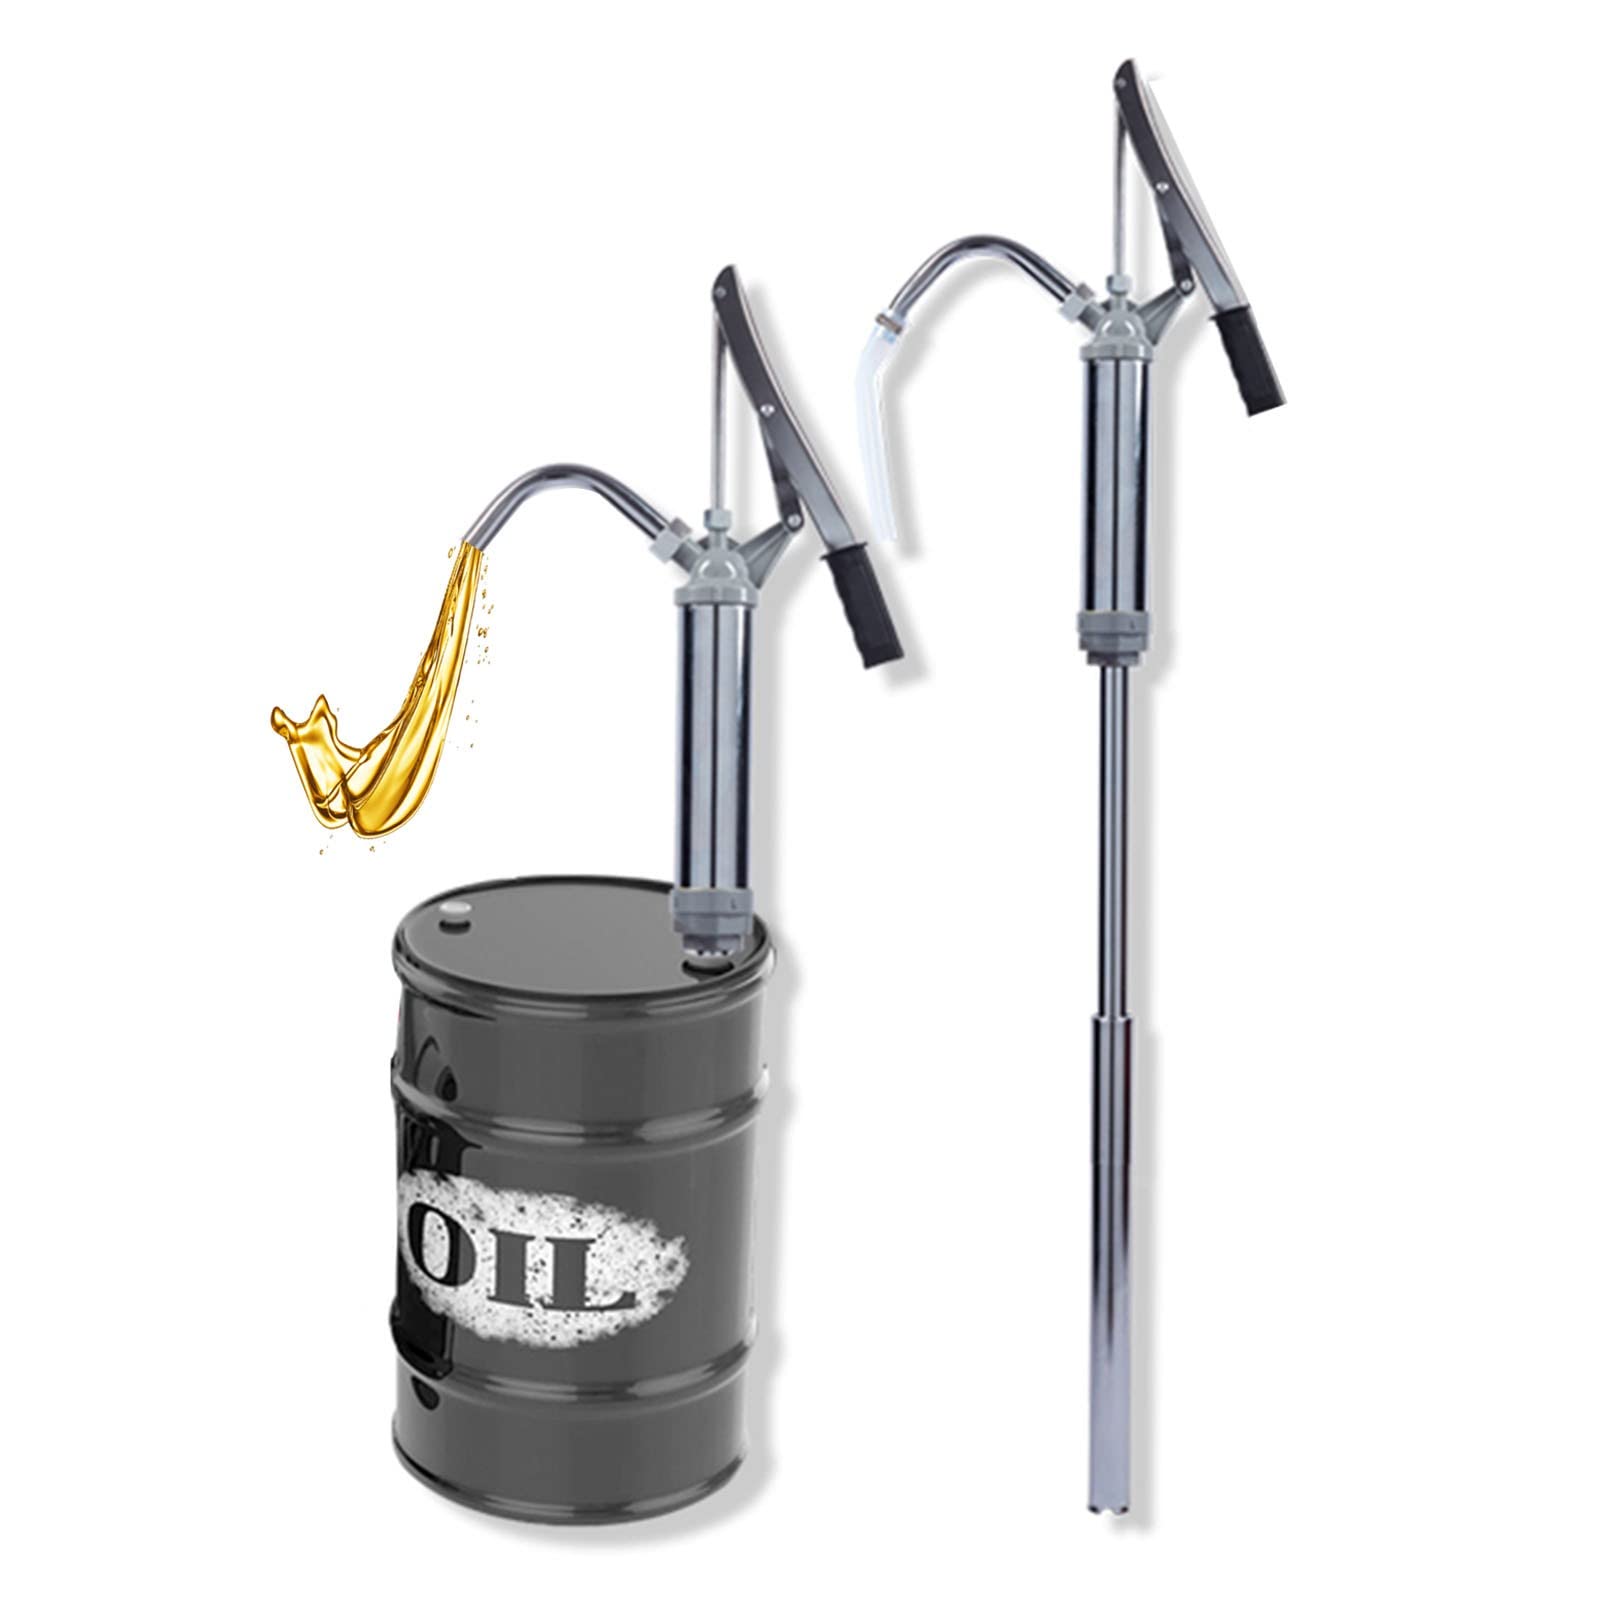 Ölfaßpumpe mit Hebel, Kanisterpumpe Umfüllpumpe für Flüssigkeiten wie Diesel Öl, Fassverschraubung 21L/min, Handdrucksauger, Getriebeöl-Fasspumpe von DBMGB